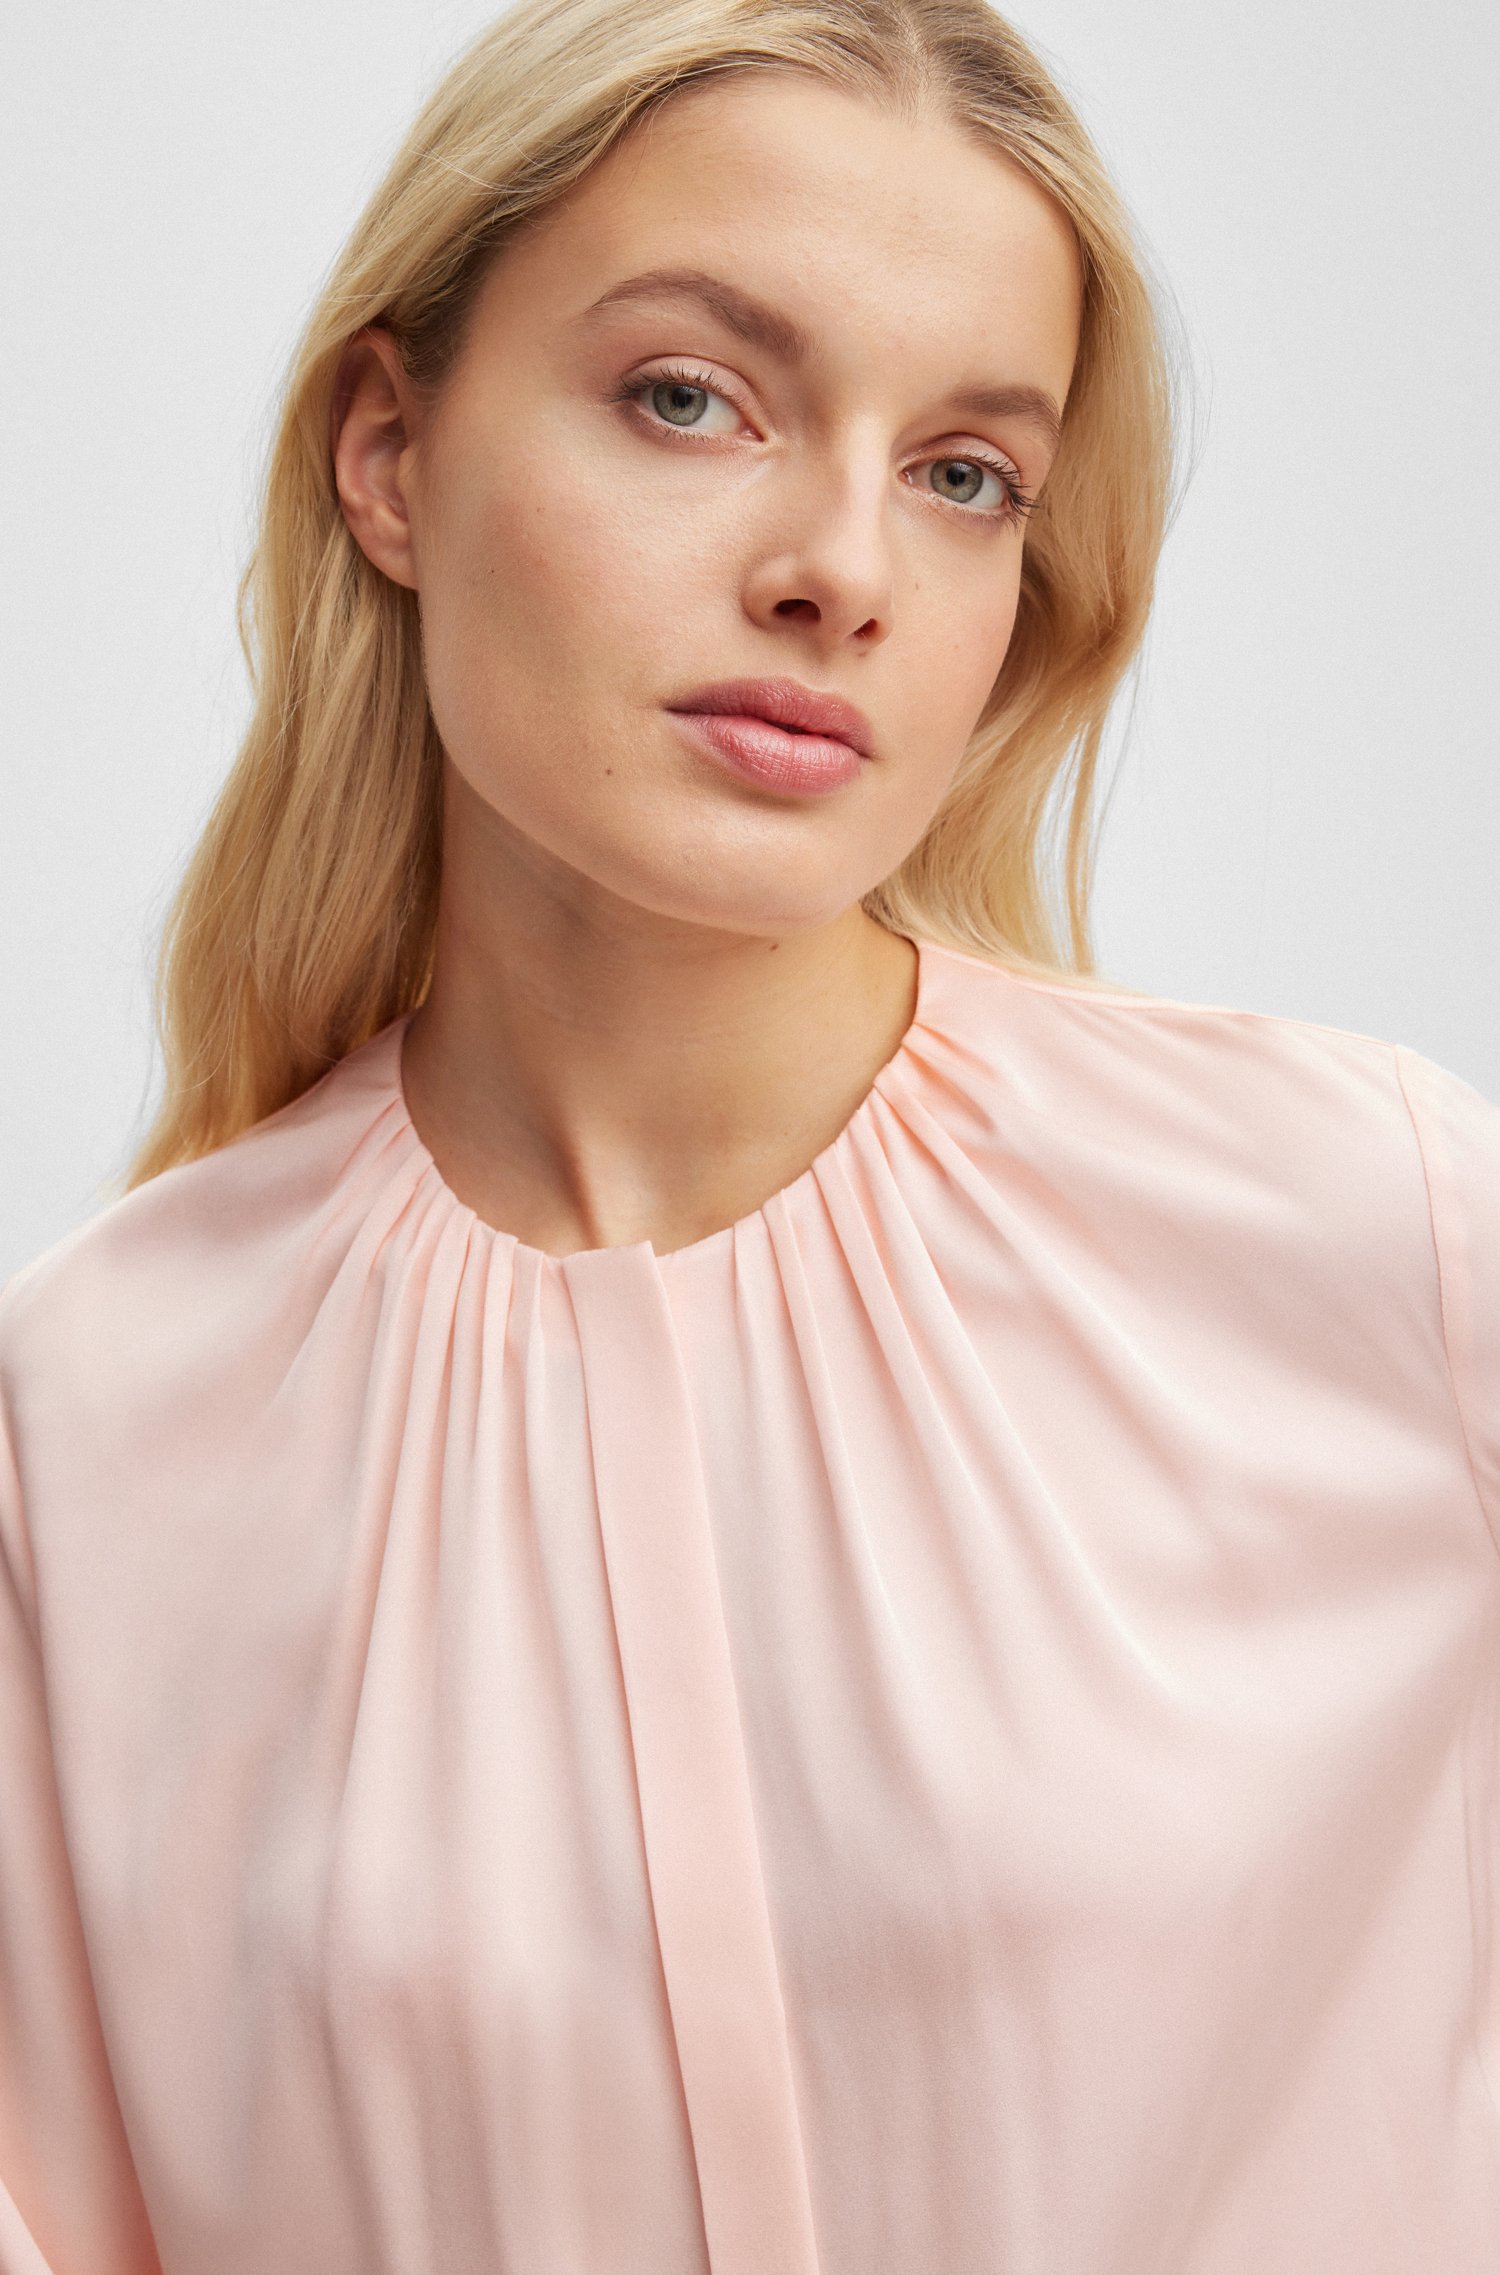 betale sig Forskel Modstand Dametøj - Bluser til kvinder online shop i Danmark.